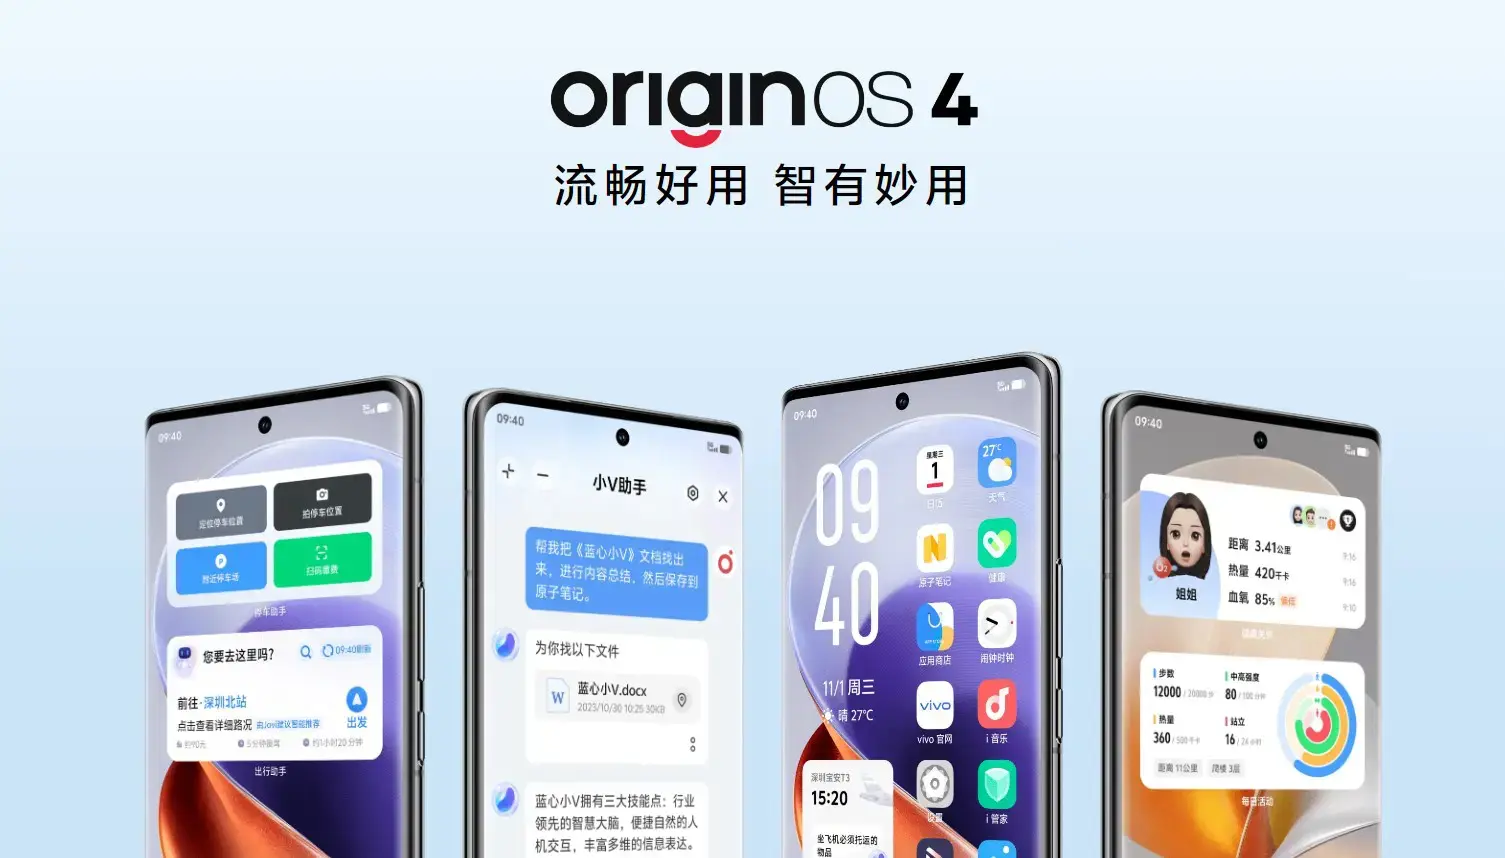 OriginOS 4 - нова прошивка vivo, яка оптимізує пам'ять, знижує енергоспоживання і збільшує час роботи